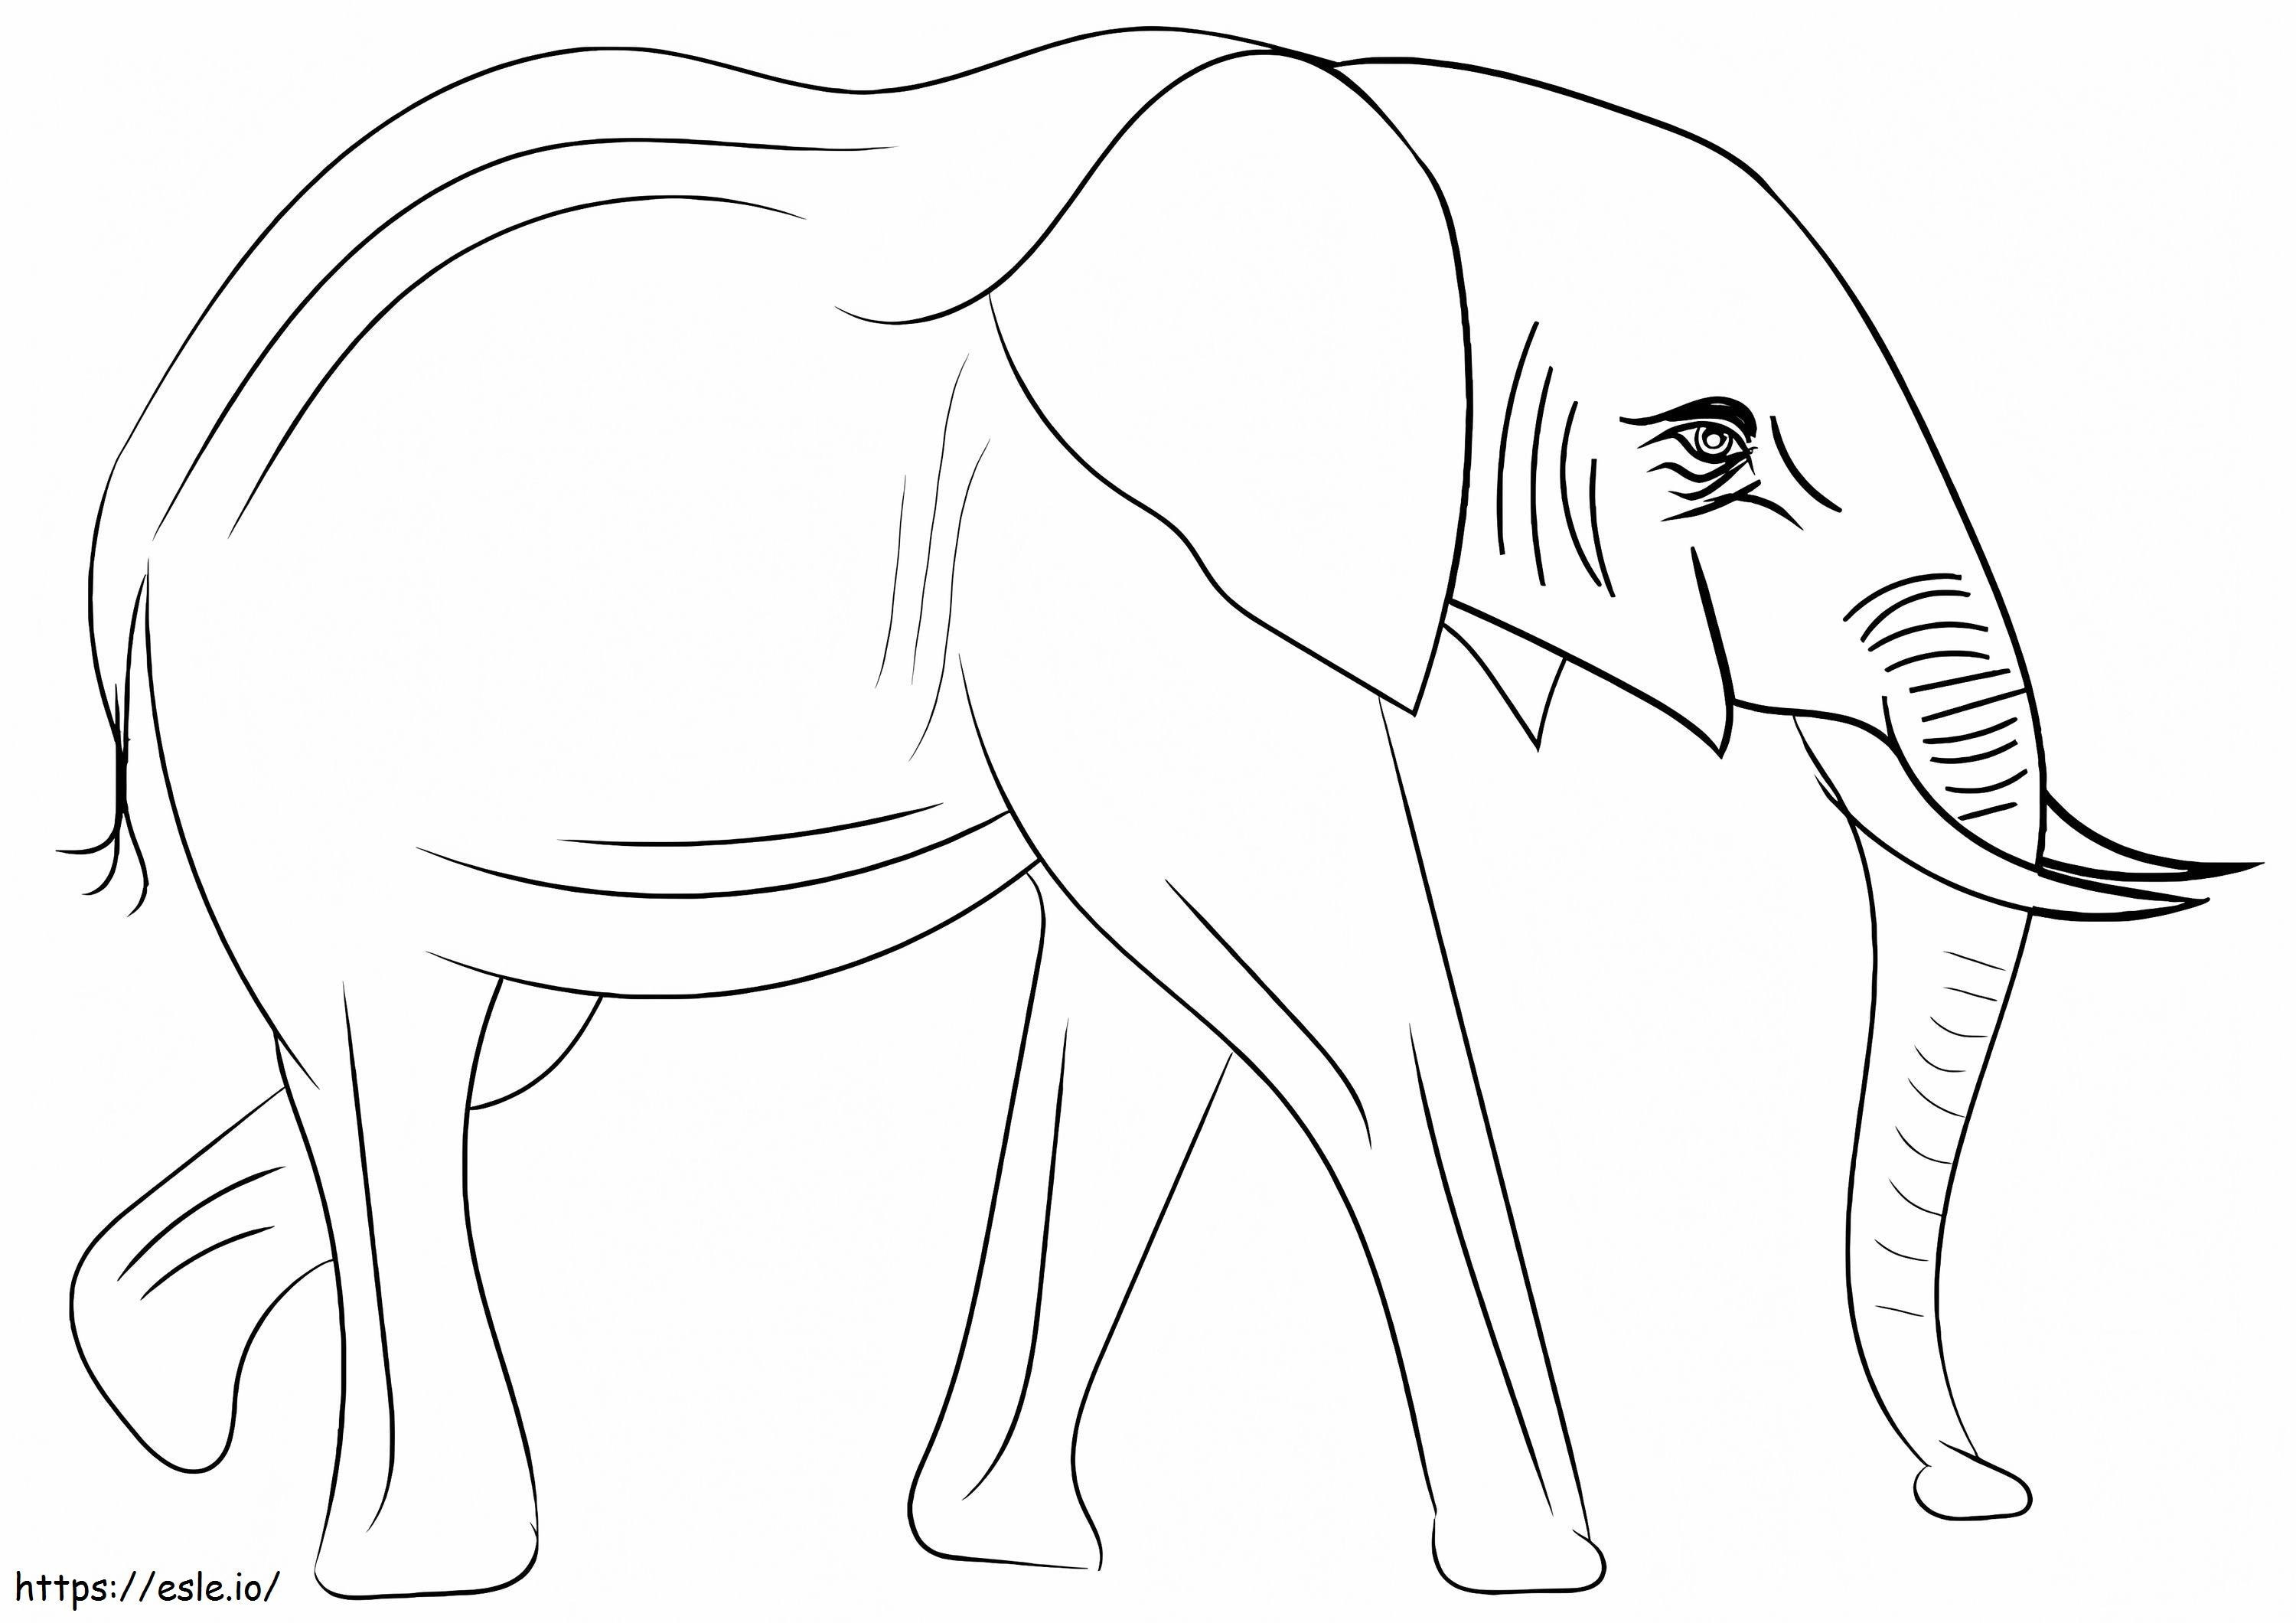 Elefante africano para colorear